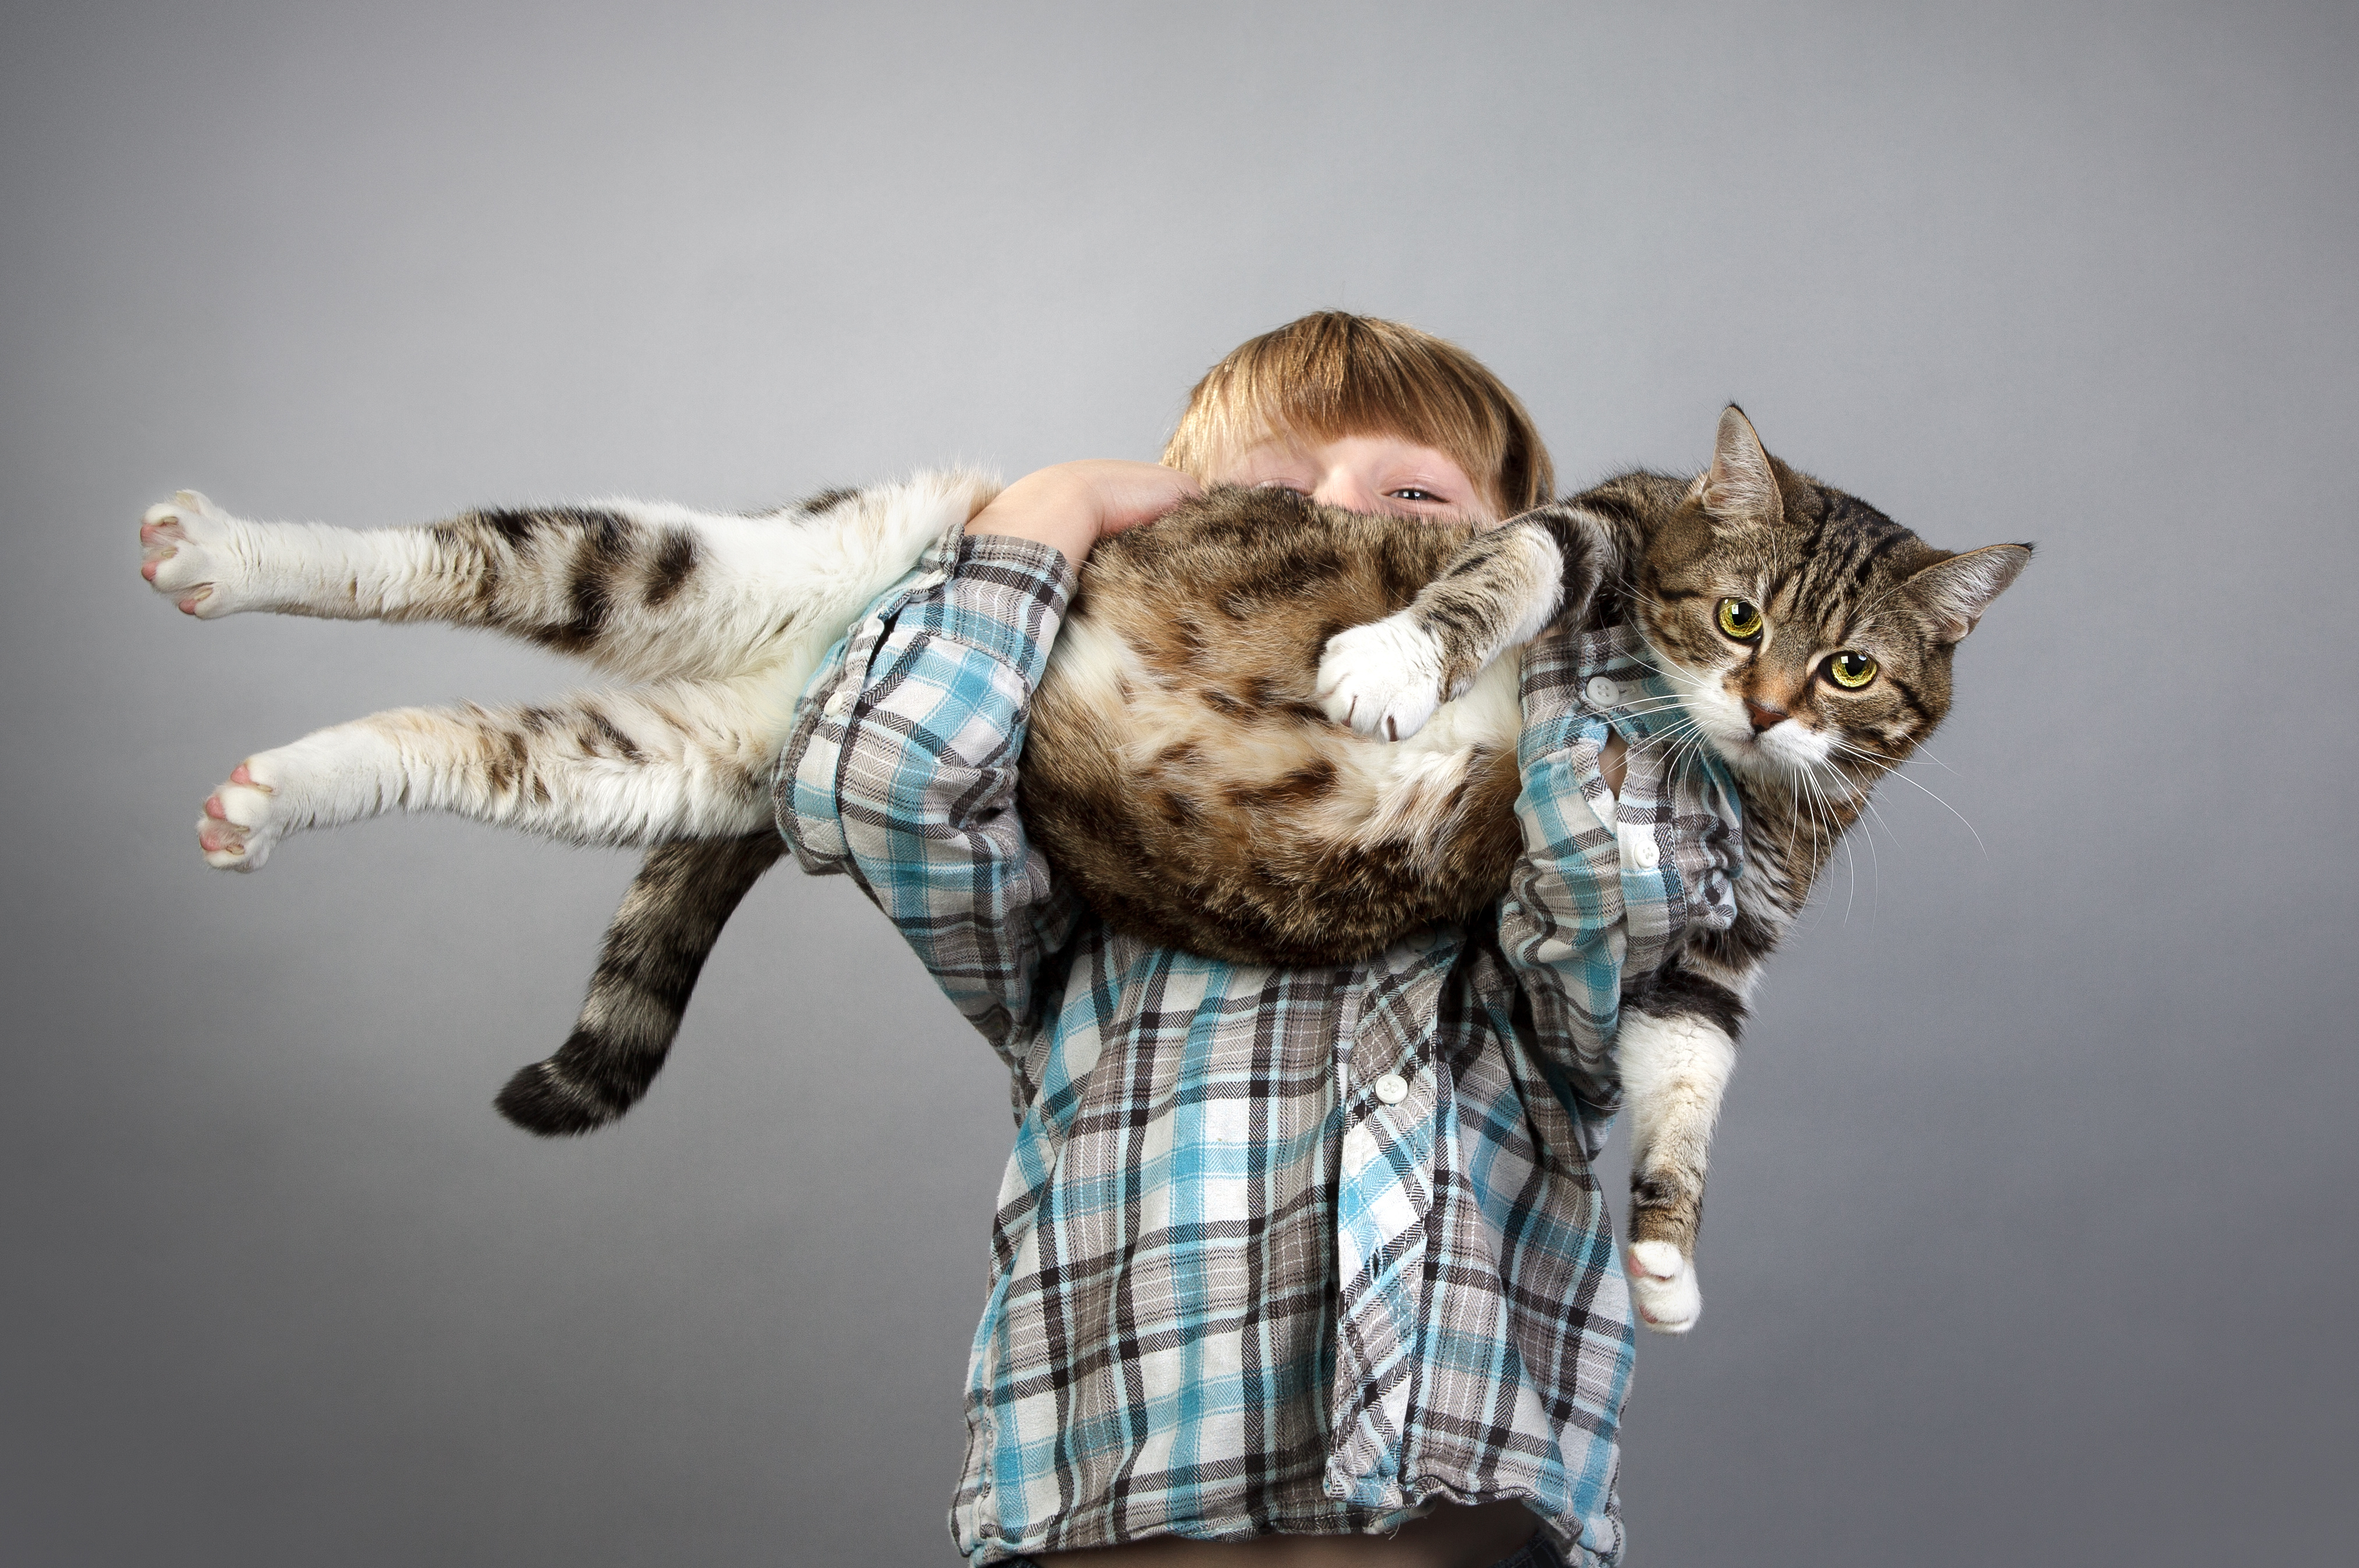 Ein Junge trägt eine große Katze auf dem Arm.